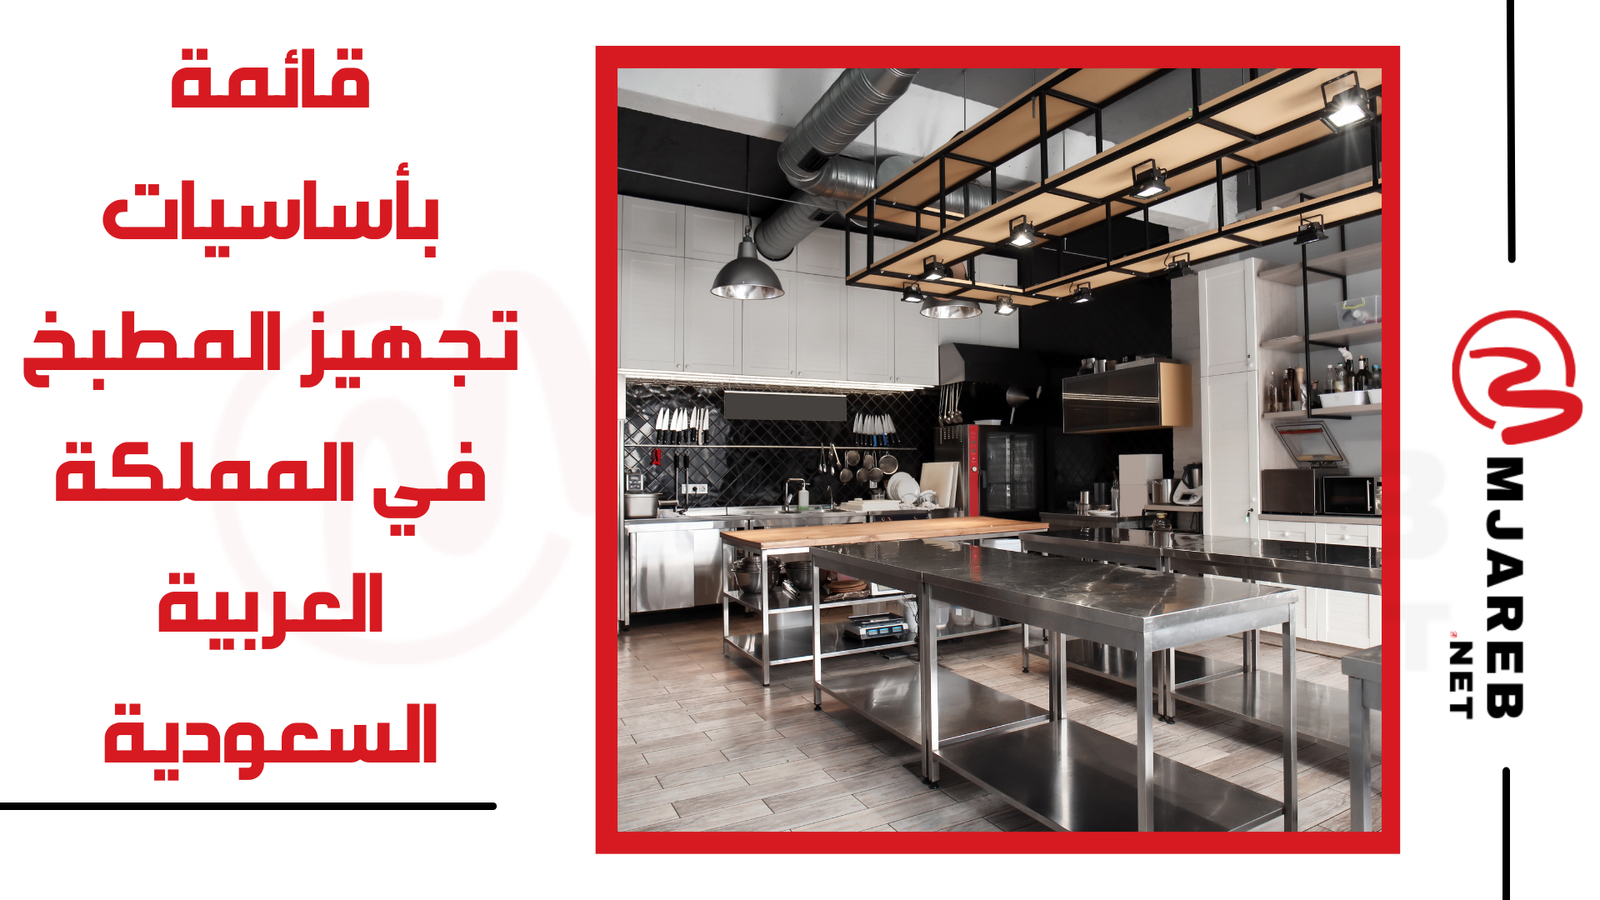 قائمة بأساسيات تجهيز المطبخ في المملكة العربية السعودية